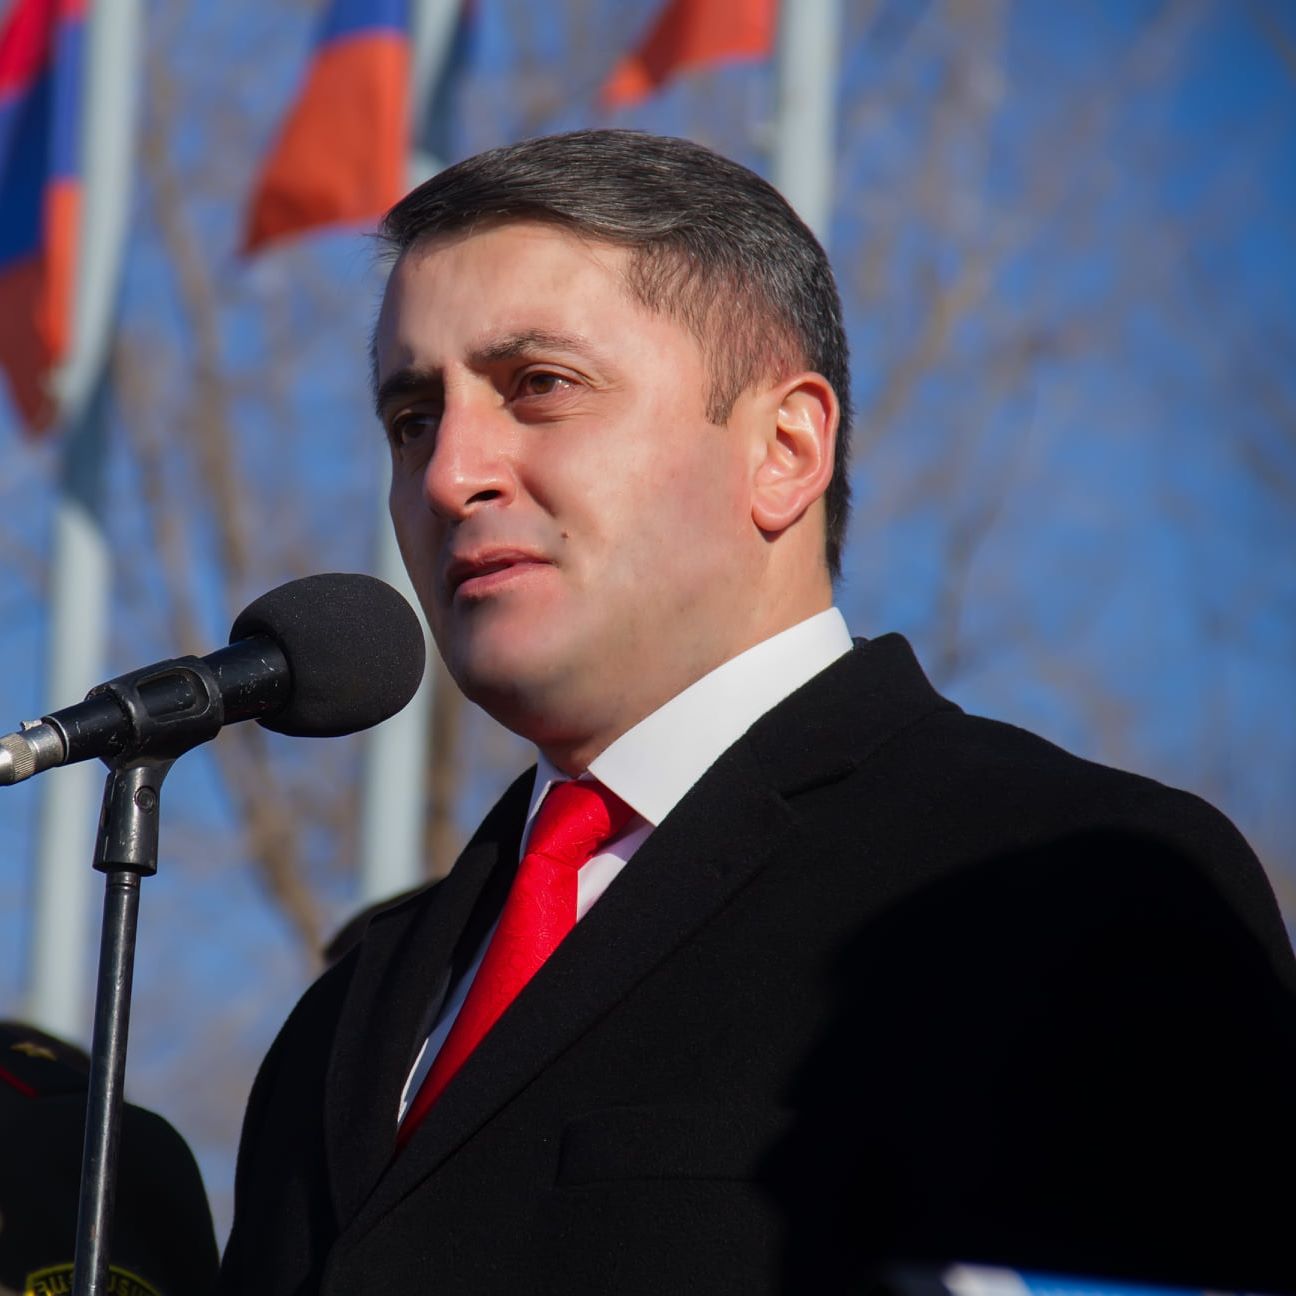 Խաչիկ Ասրյանը գիտի, թե ով կարող է հավակնել Հայաստանի հաջորդ վարչապետի պաշտոնին